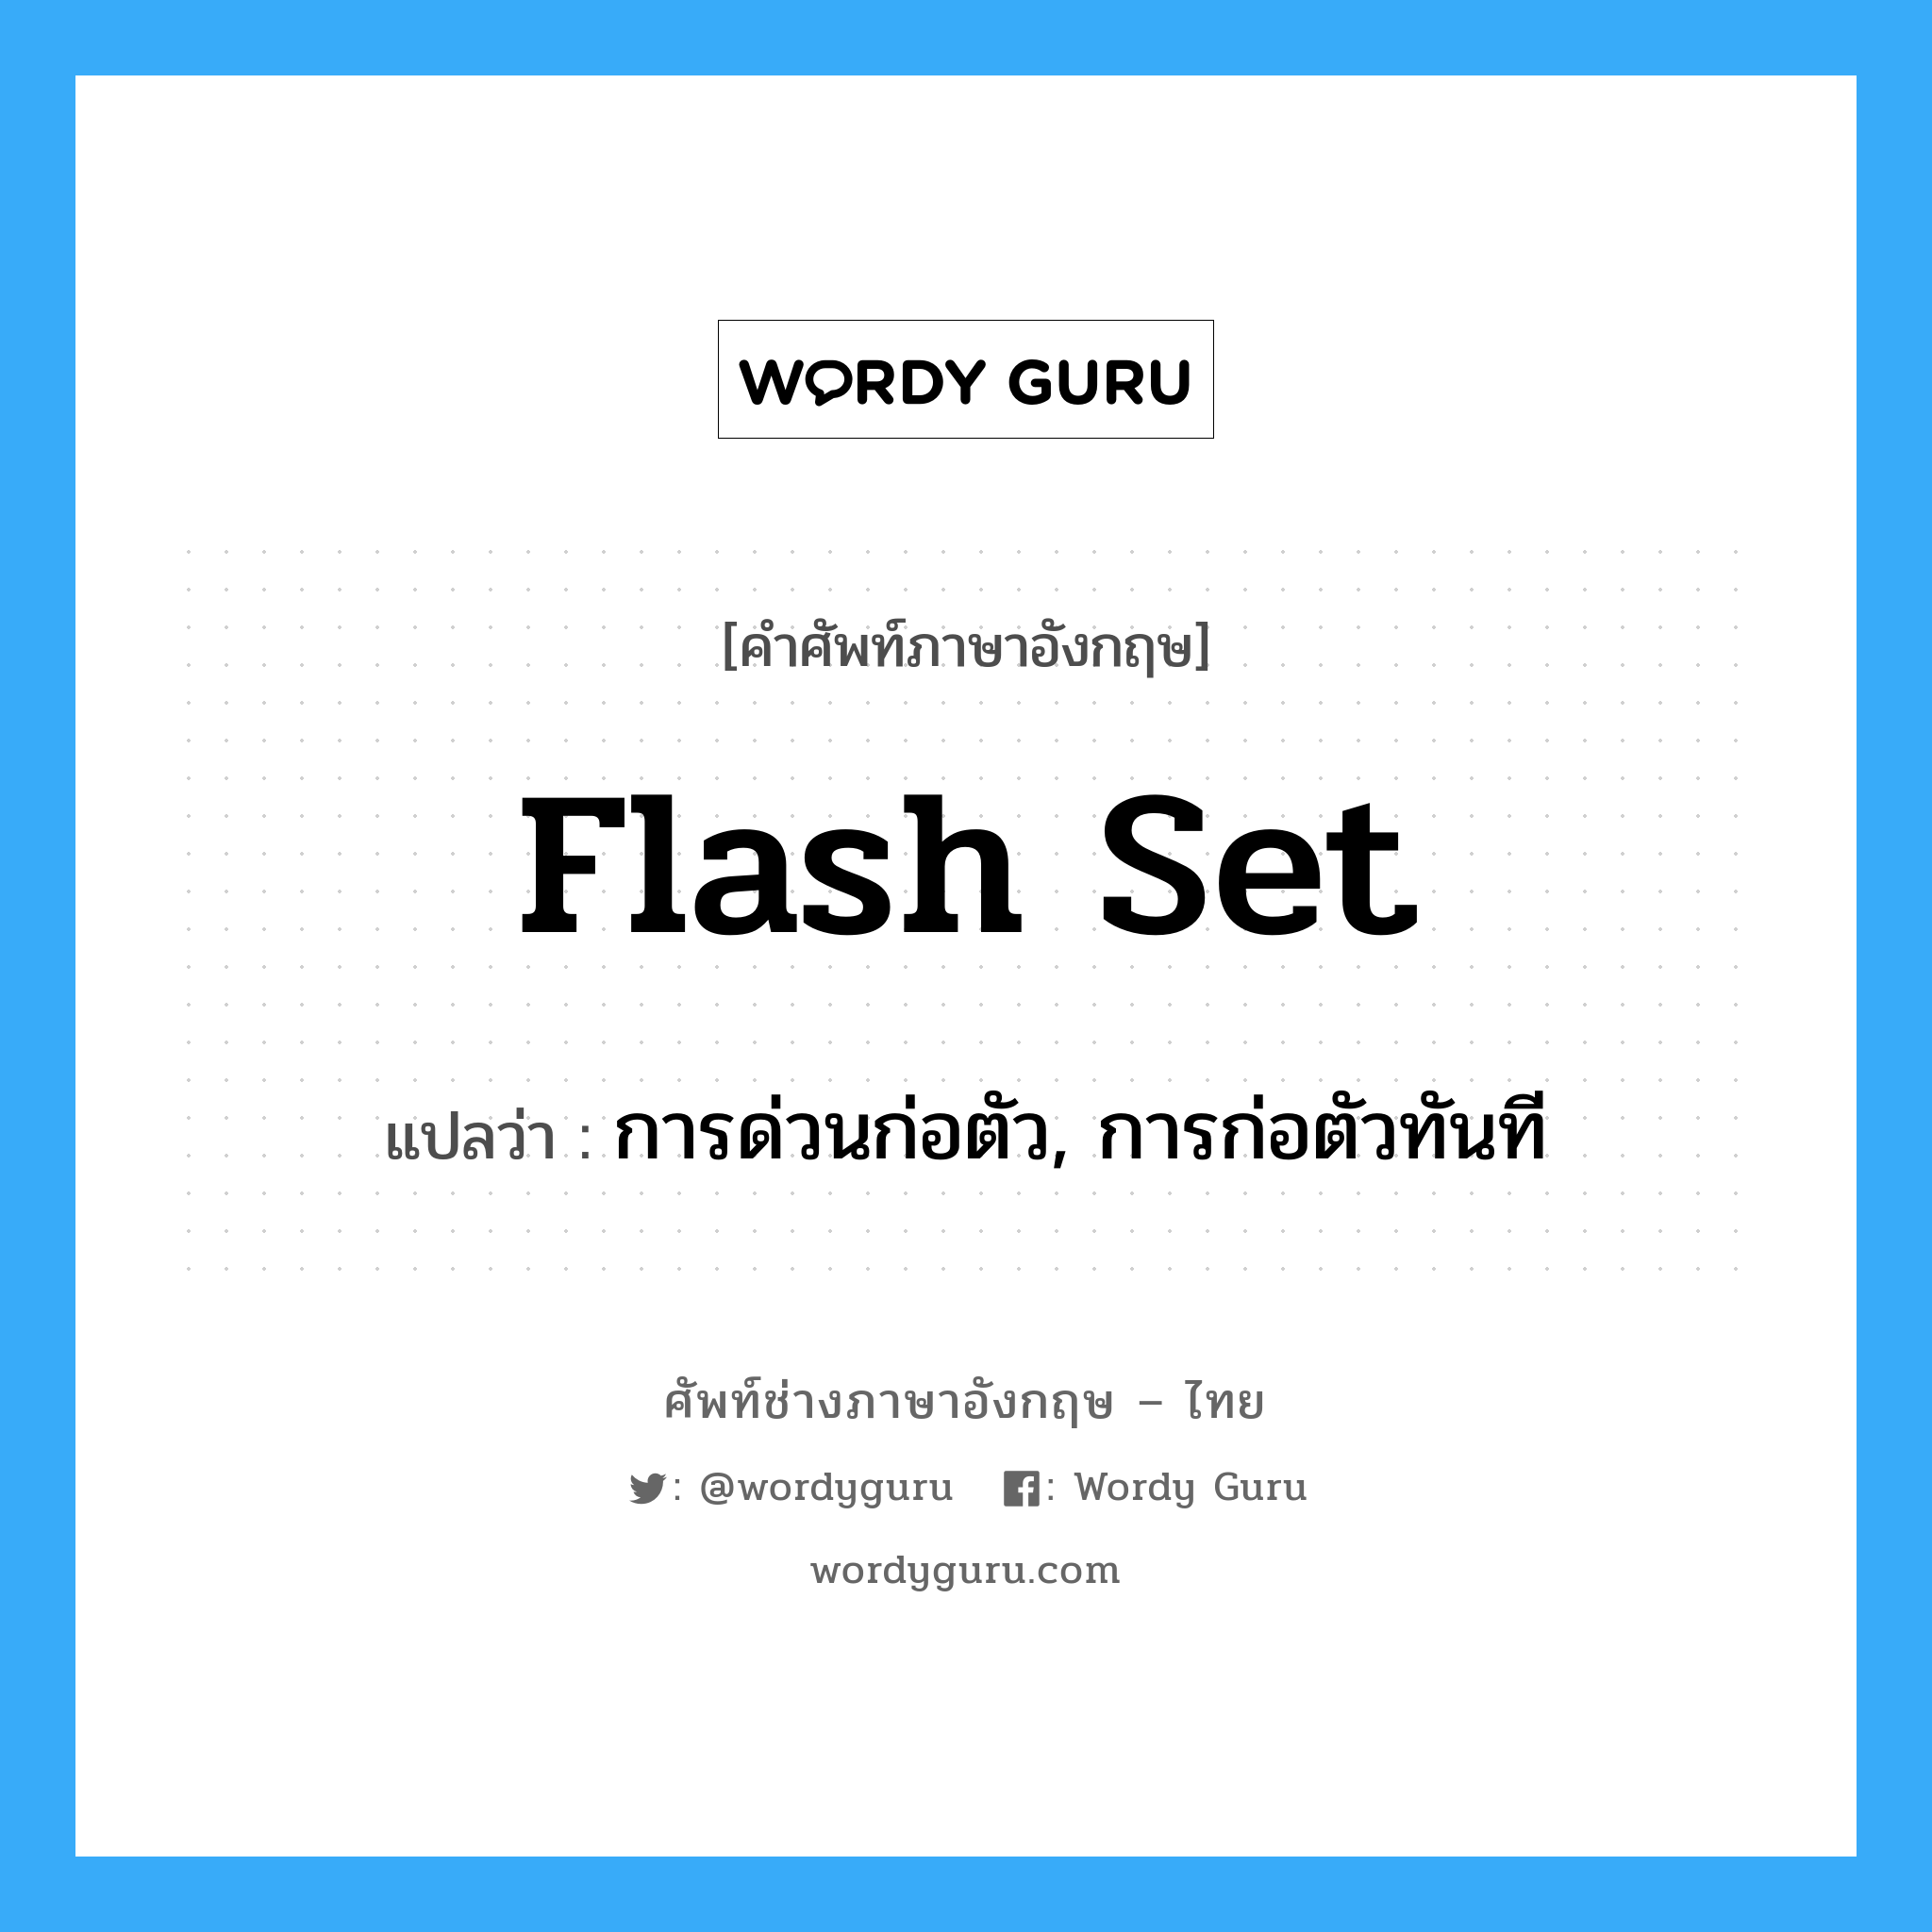 การด่วนก่อตัว, การก่อตัวทันที ภาษาอังกฤษ?, คำศัพท์ช่างภาษาอังกฤษ - ไทย การด่วนก่อตัว, การก่อตัวทันที คำศัพท์ภาษาอังกฤษ การด่วนก่อตัว, การก่อตัวทันที แปลว่า flash set